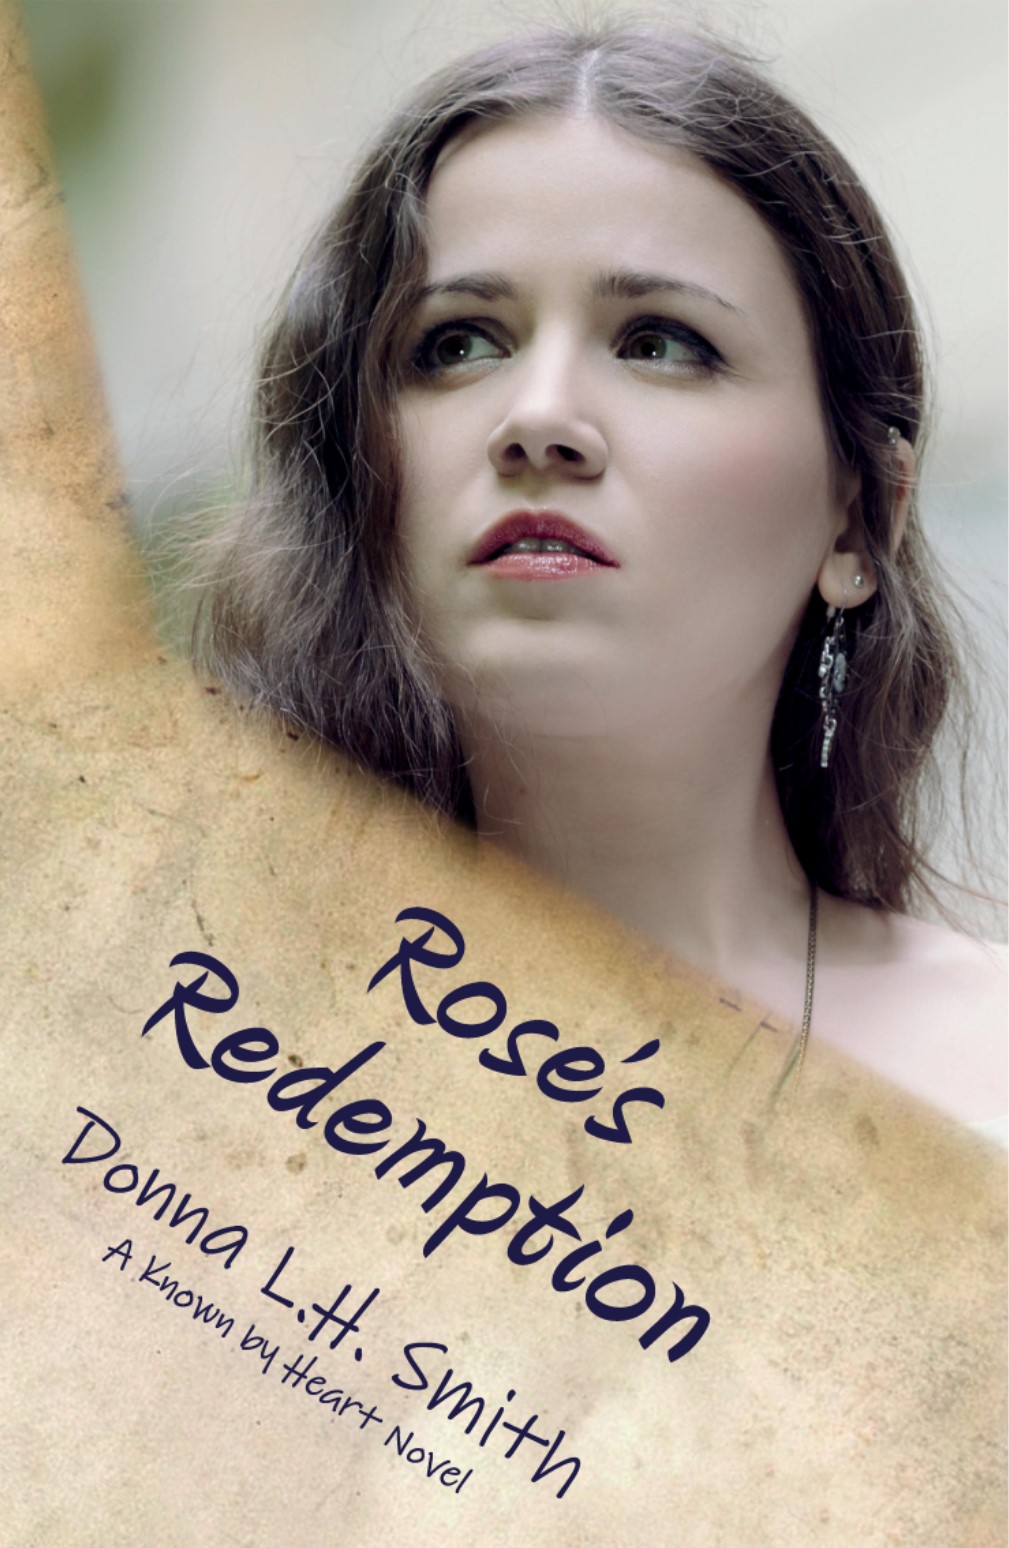 Rose's Redemption